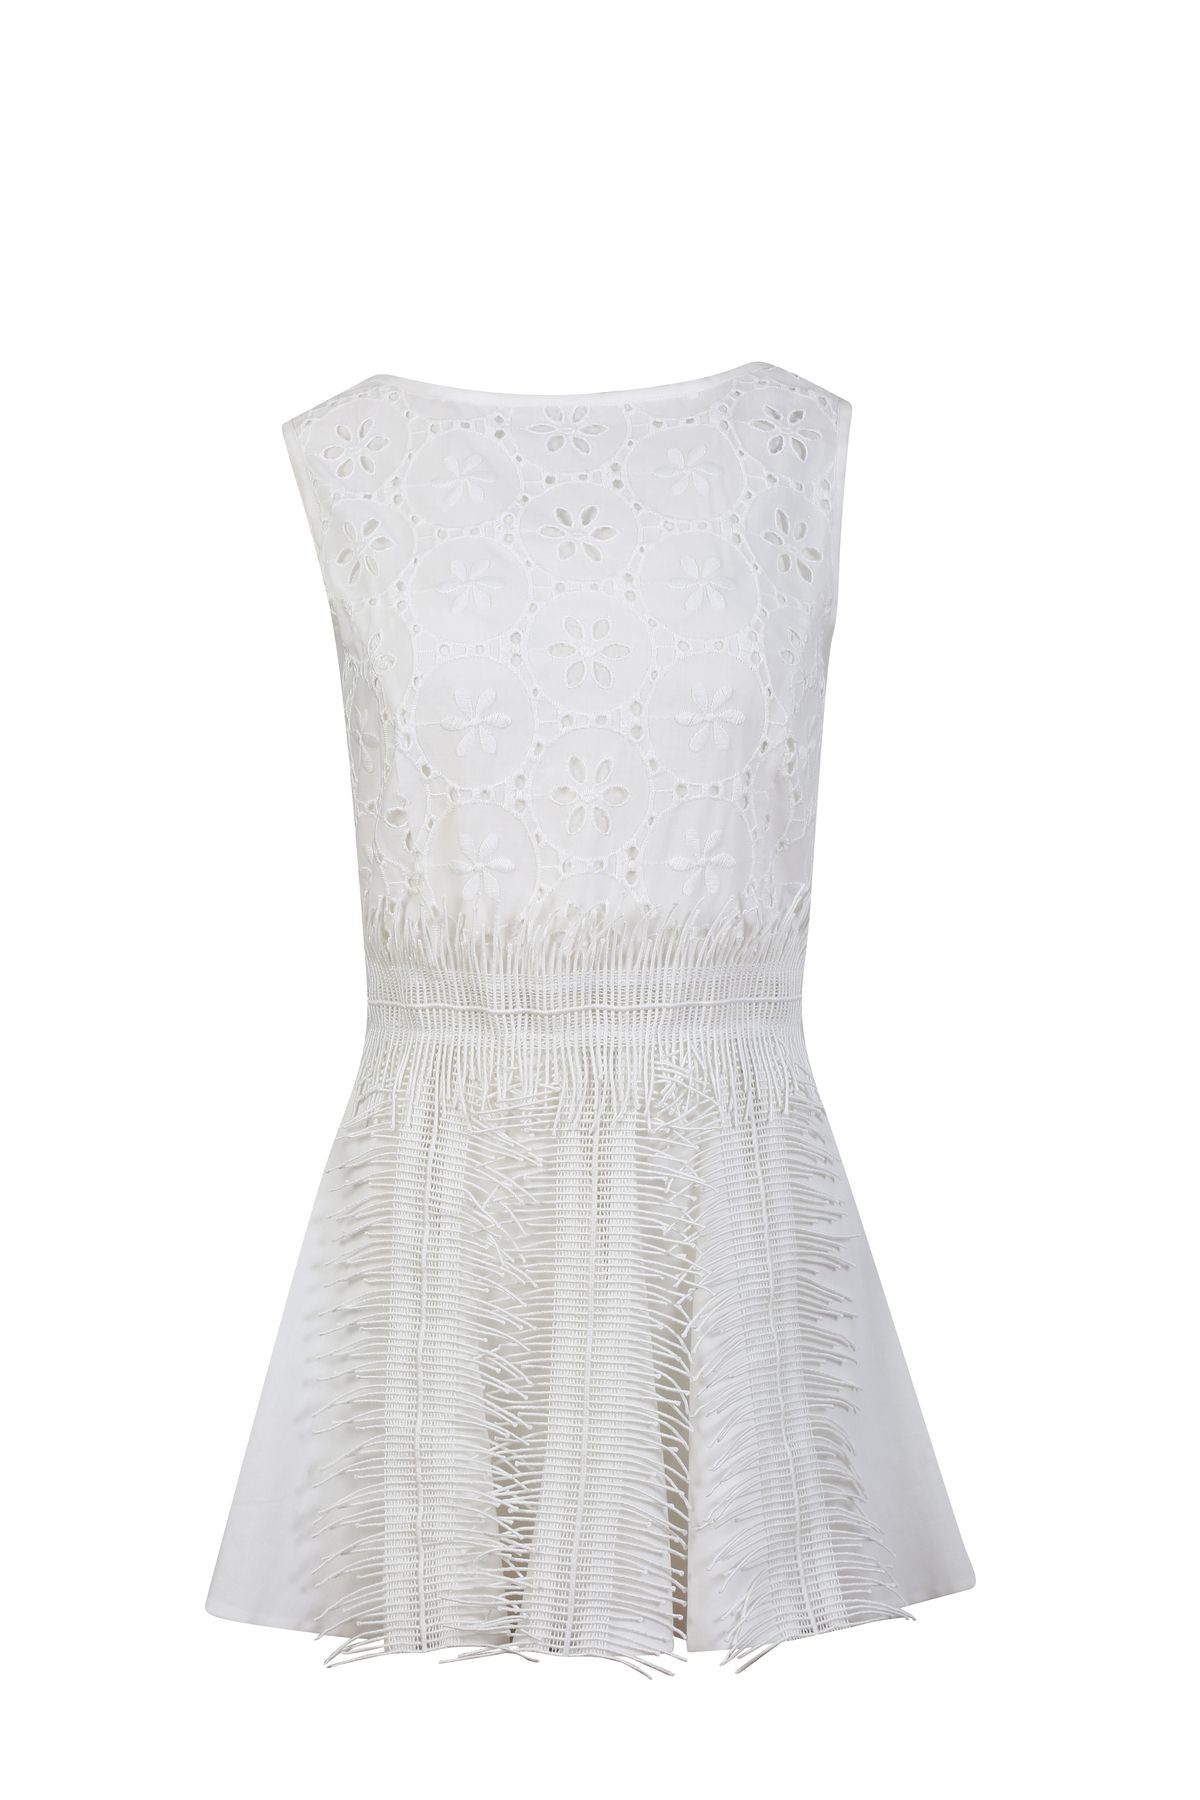 Rheme And Fons Özel Tasarım Couture Fistolu İç Astarlı Püskül Detaylı Mini Beyaz Ev Çıkış Gelinliği Abiye Elbise